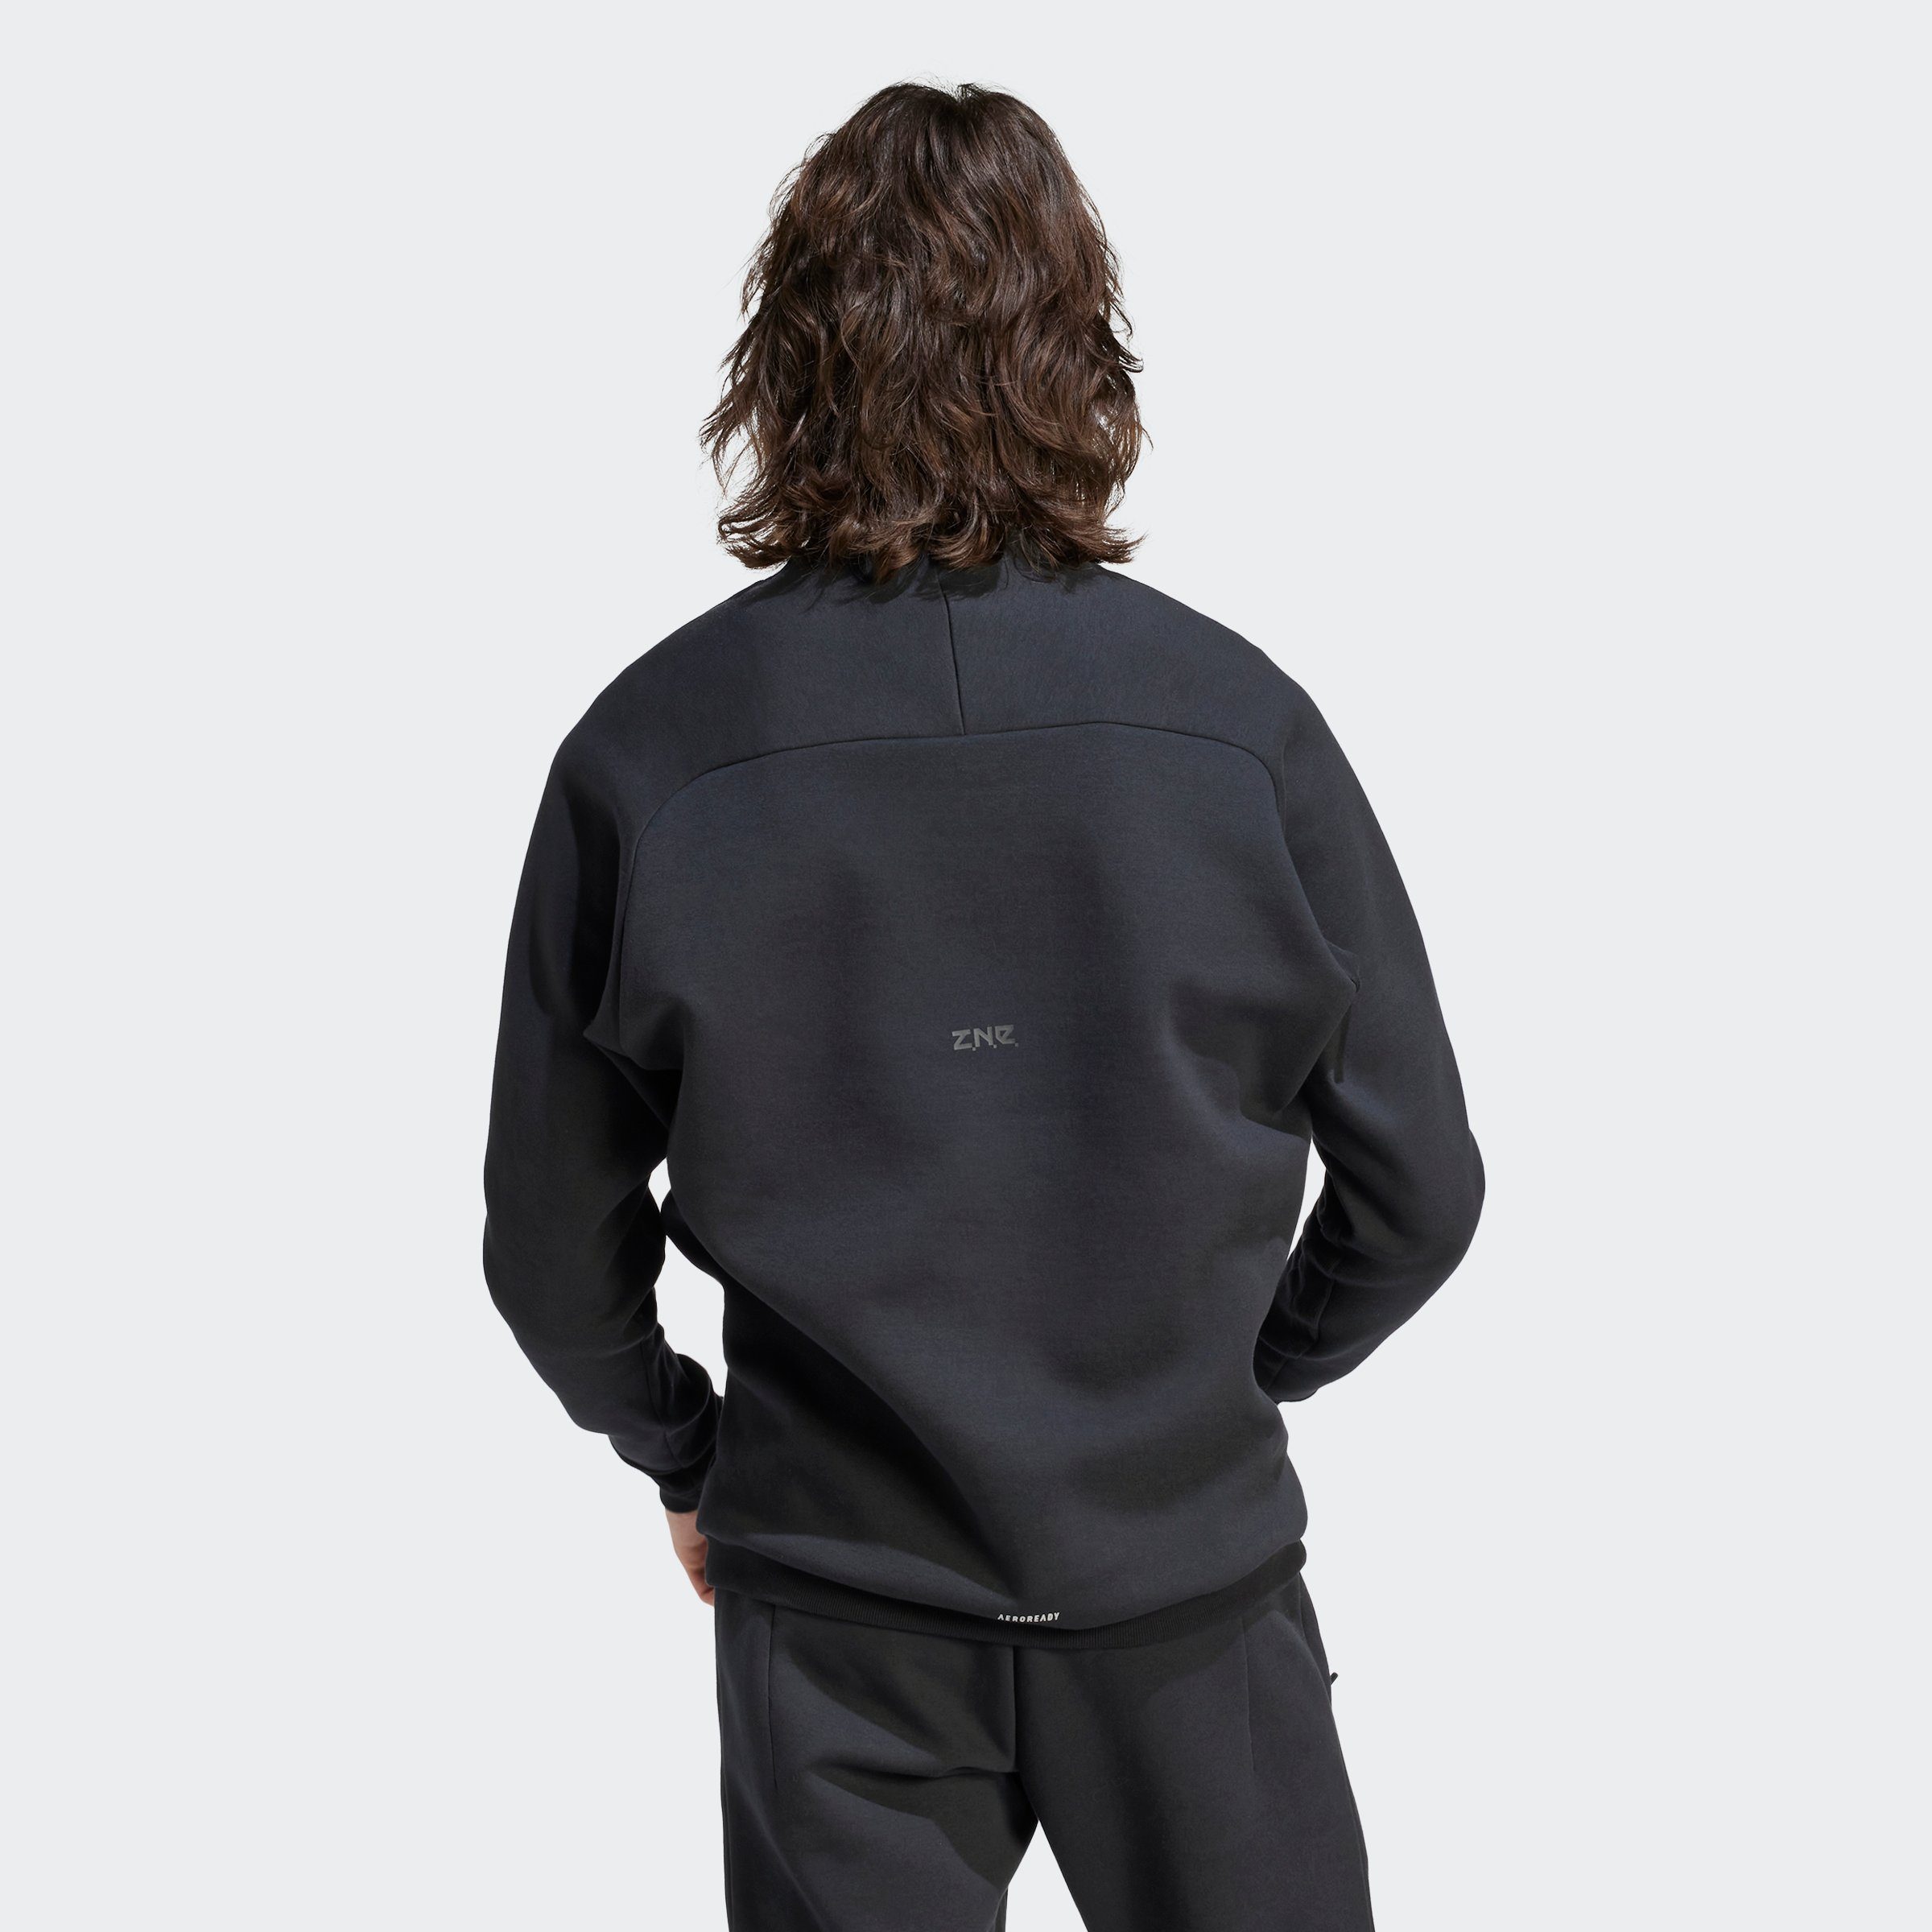 PREMIUM Sportswear Z.N.E. adidas Sweatshirt ADIDAS Black